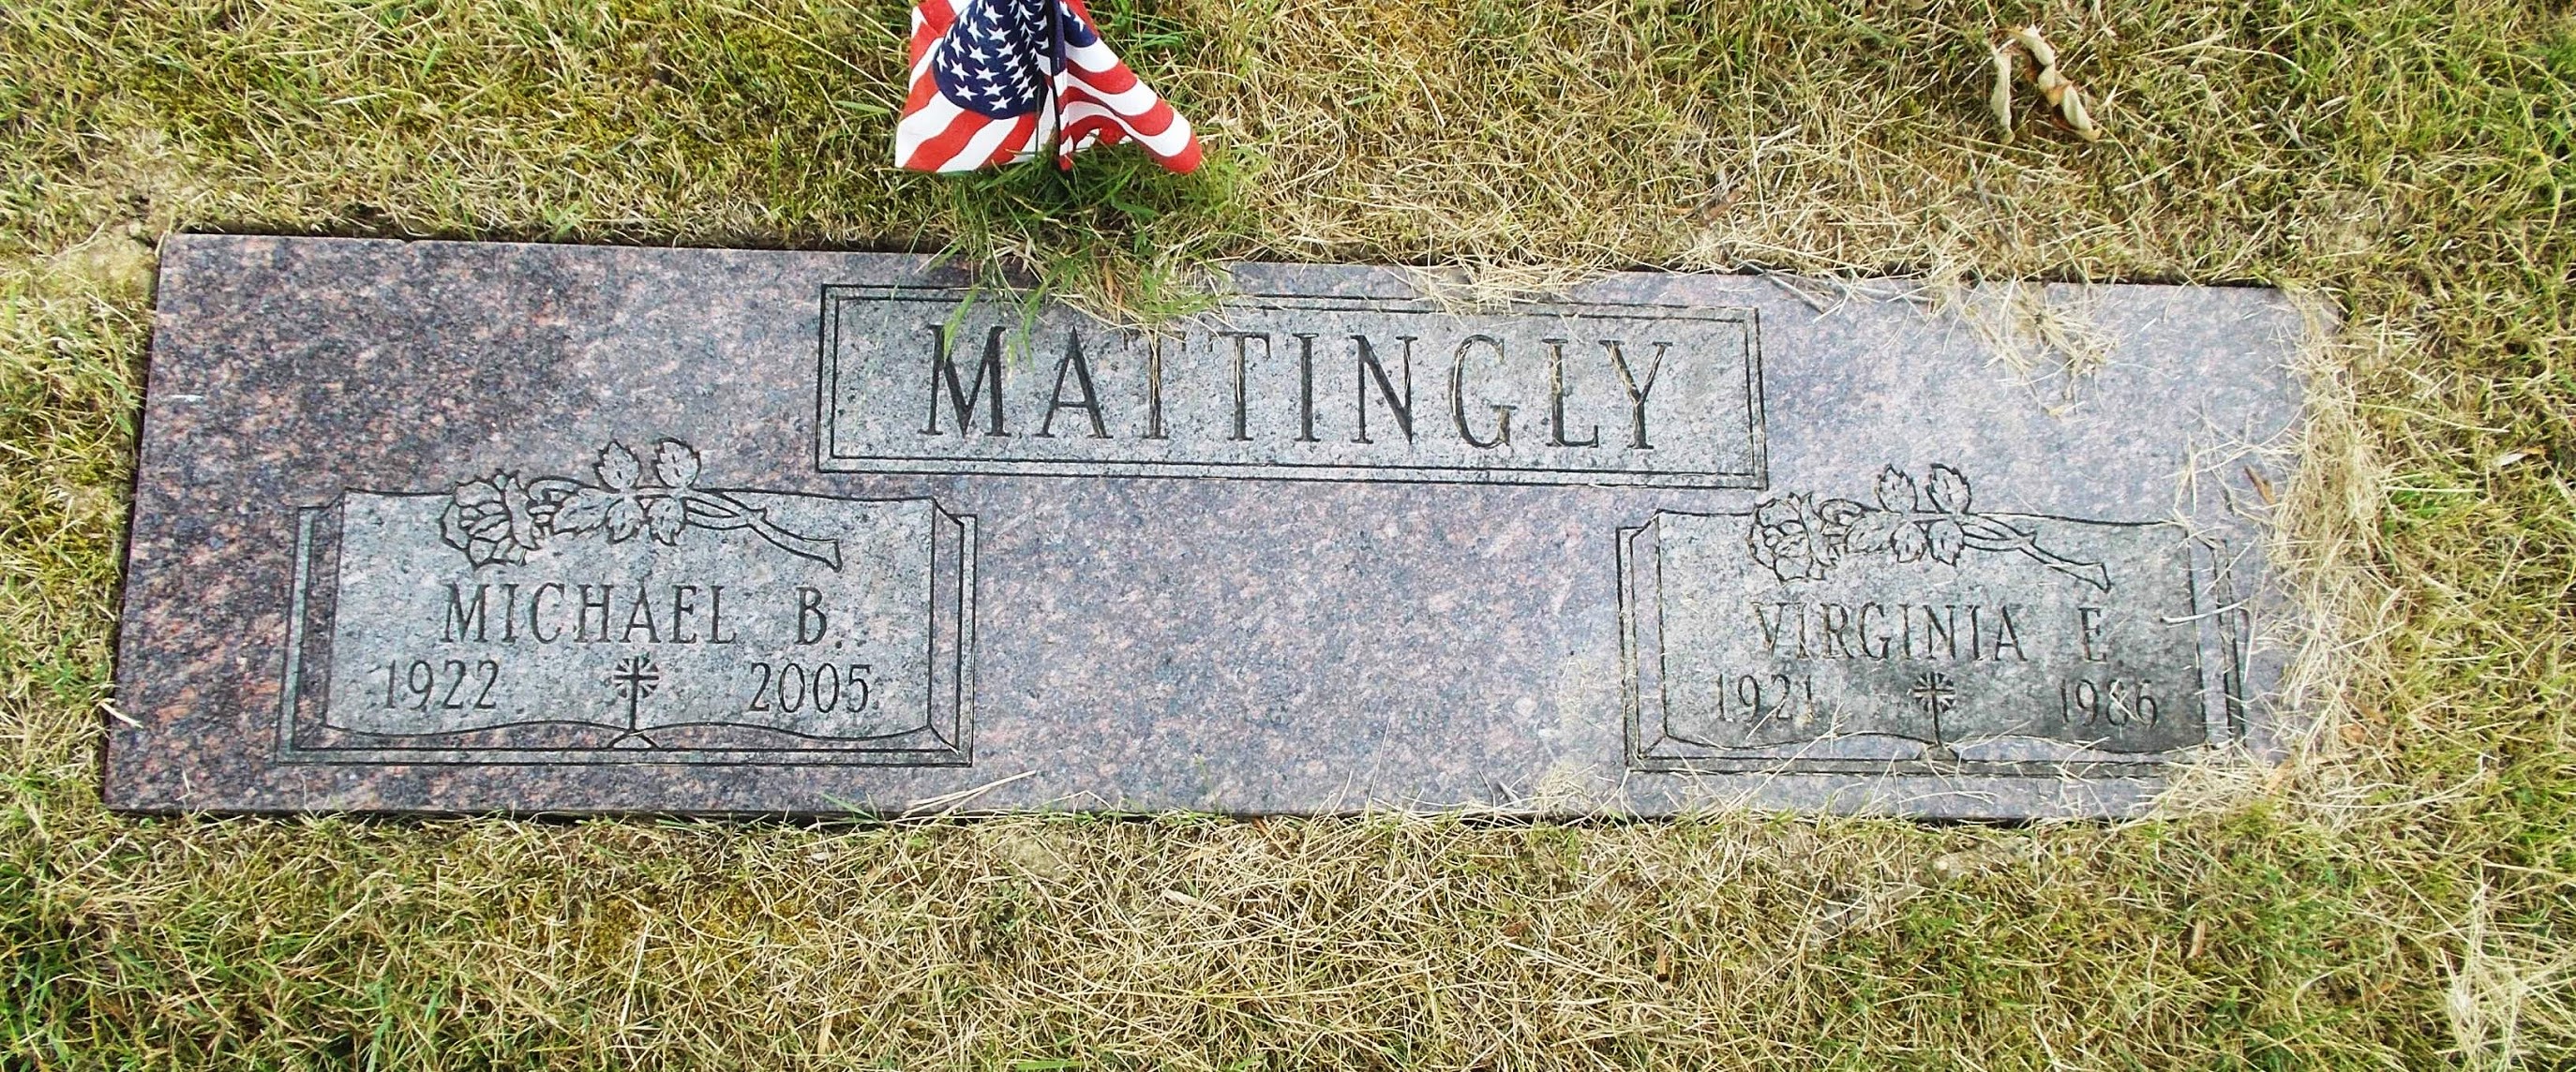 Virginia E Mattingly